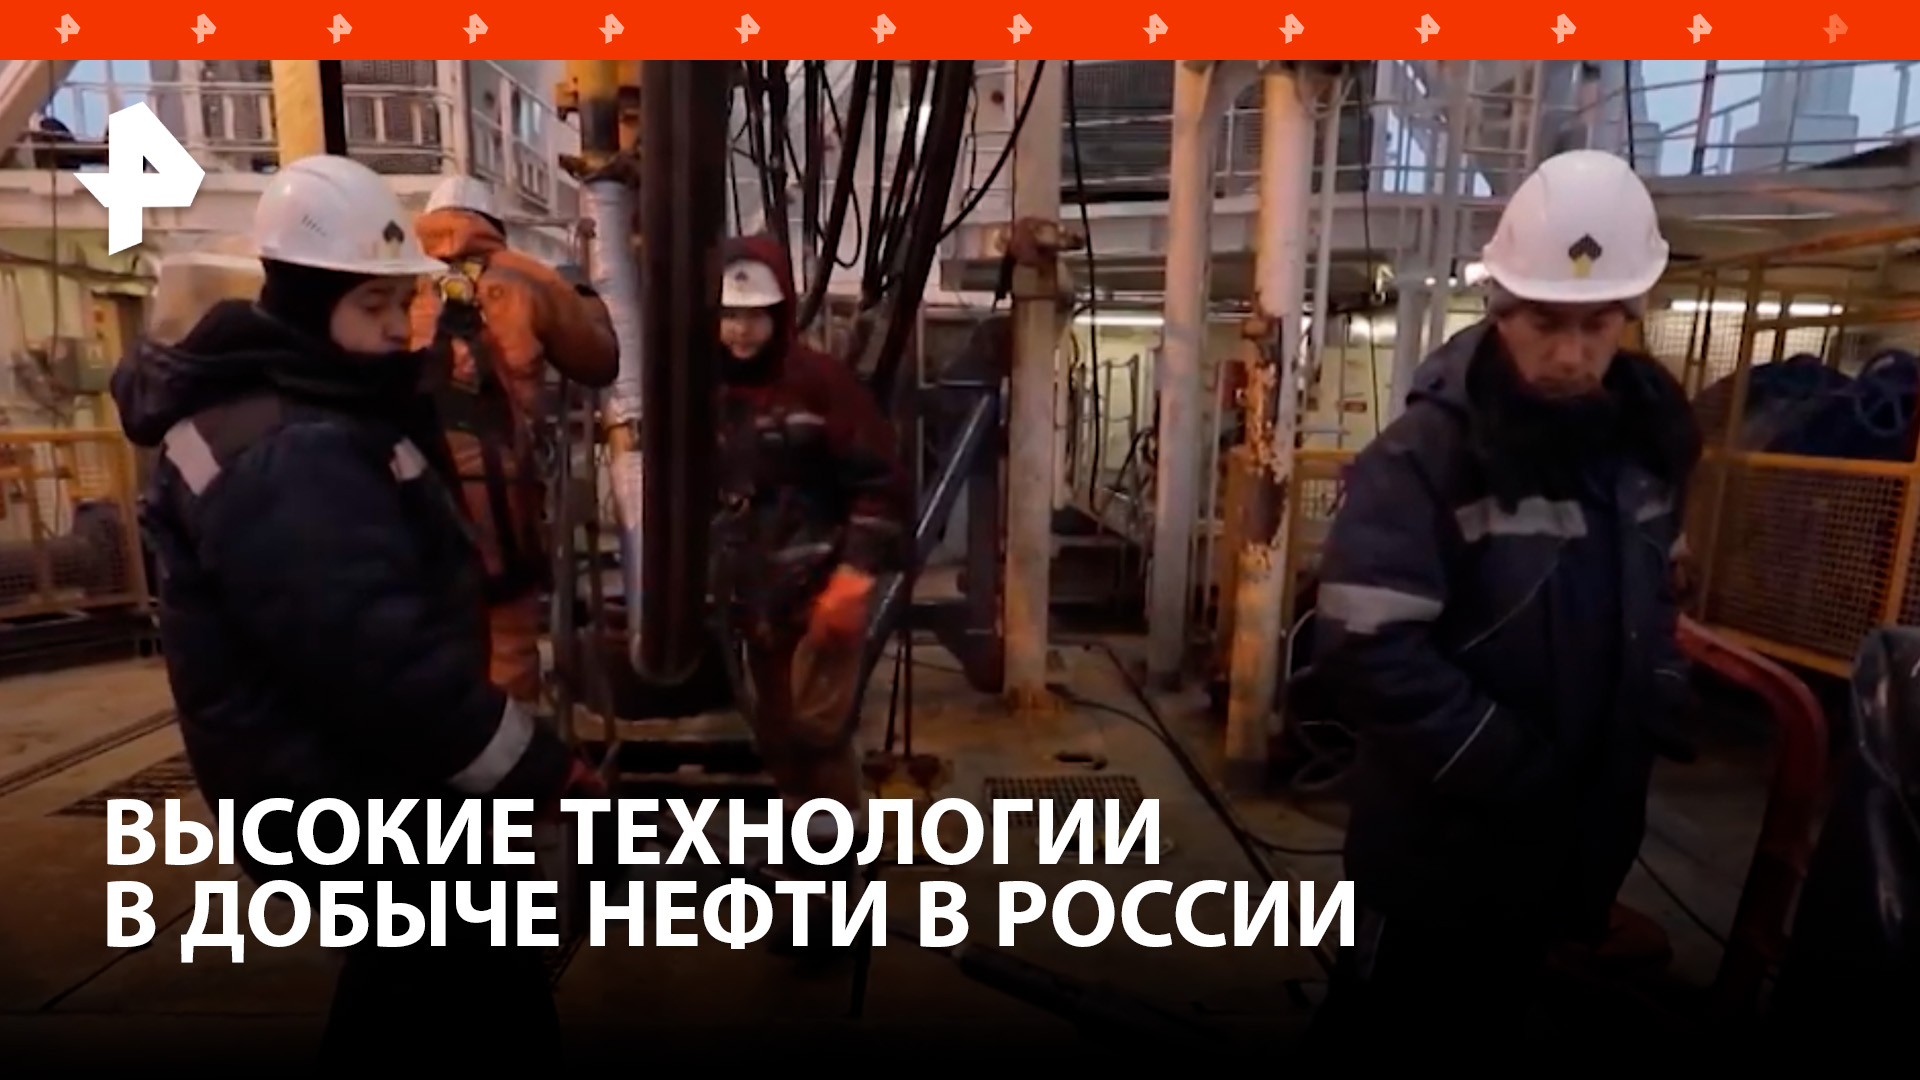 Геологи "Роснефти" используют в работе современные технологии / РЕН Новости